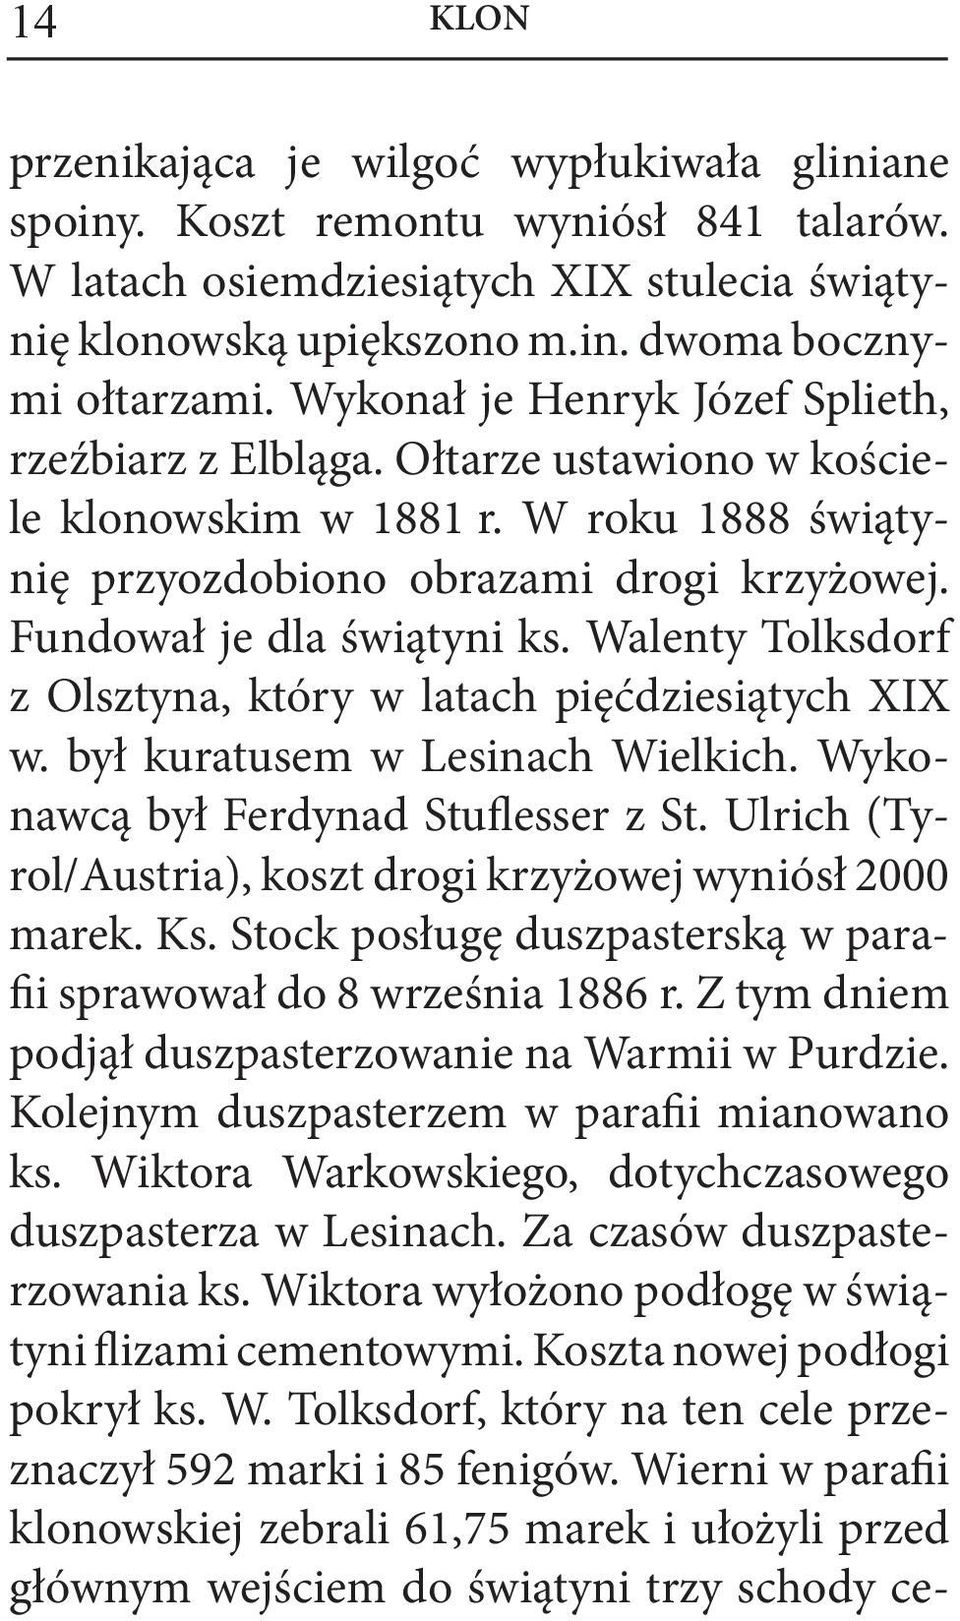 Walenty Tolksdorf z Olsztyna, który w latach pięćdziesiątych XIX w. był kuratusem w Lesinach Wielkich. Wykonawcą był Ferdynad Stuflesser z St.